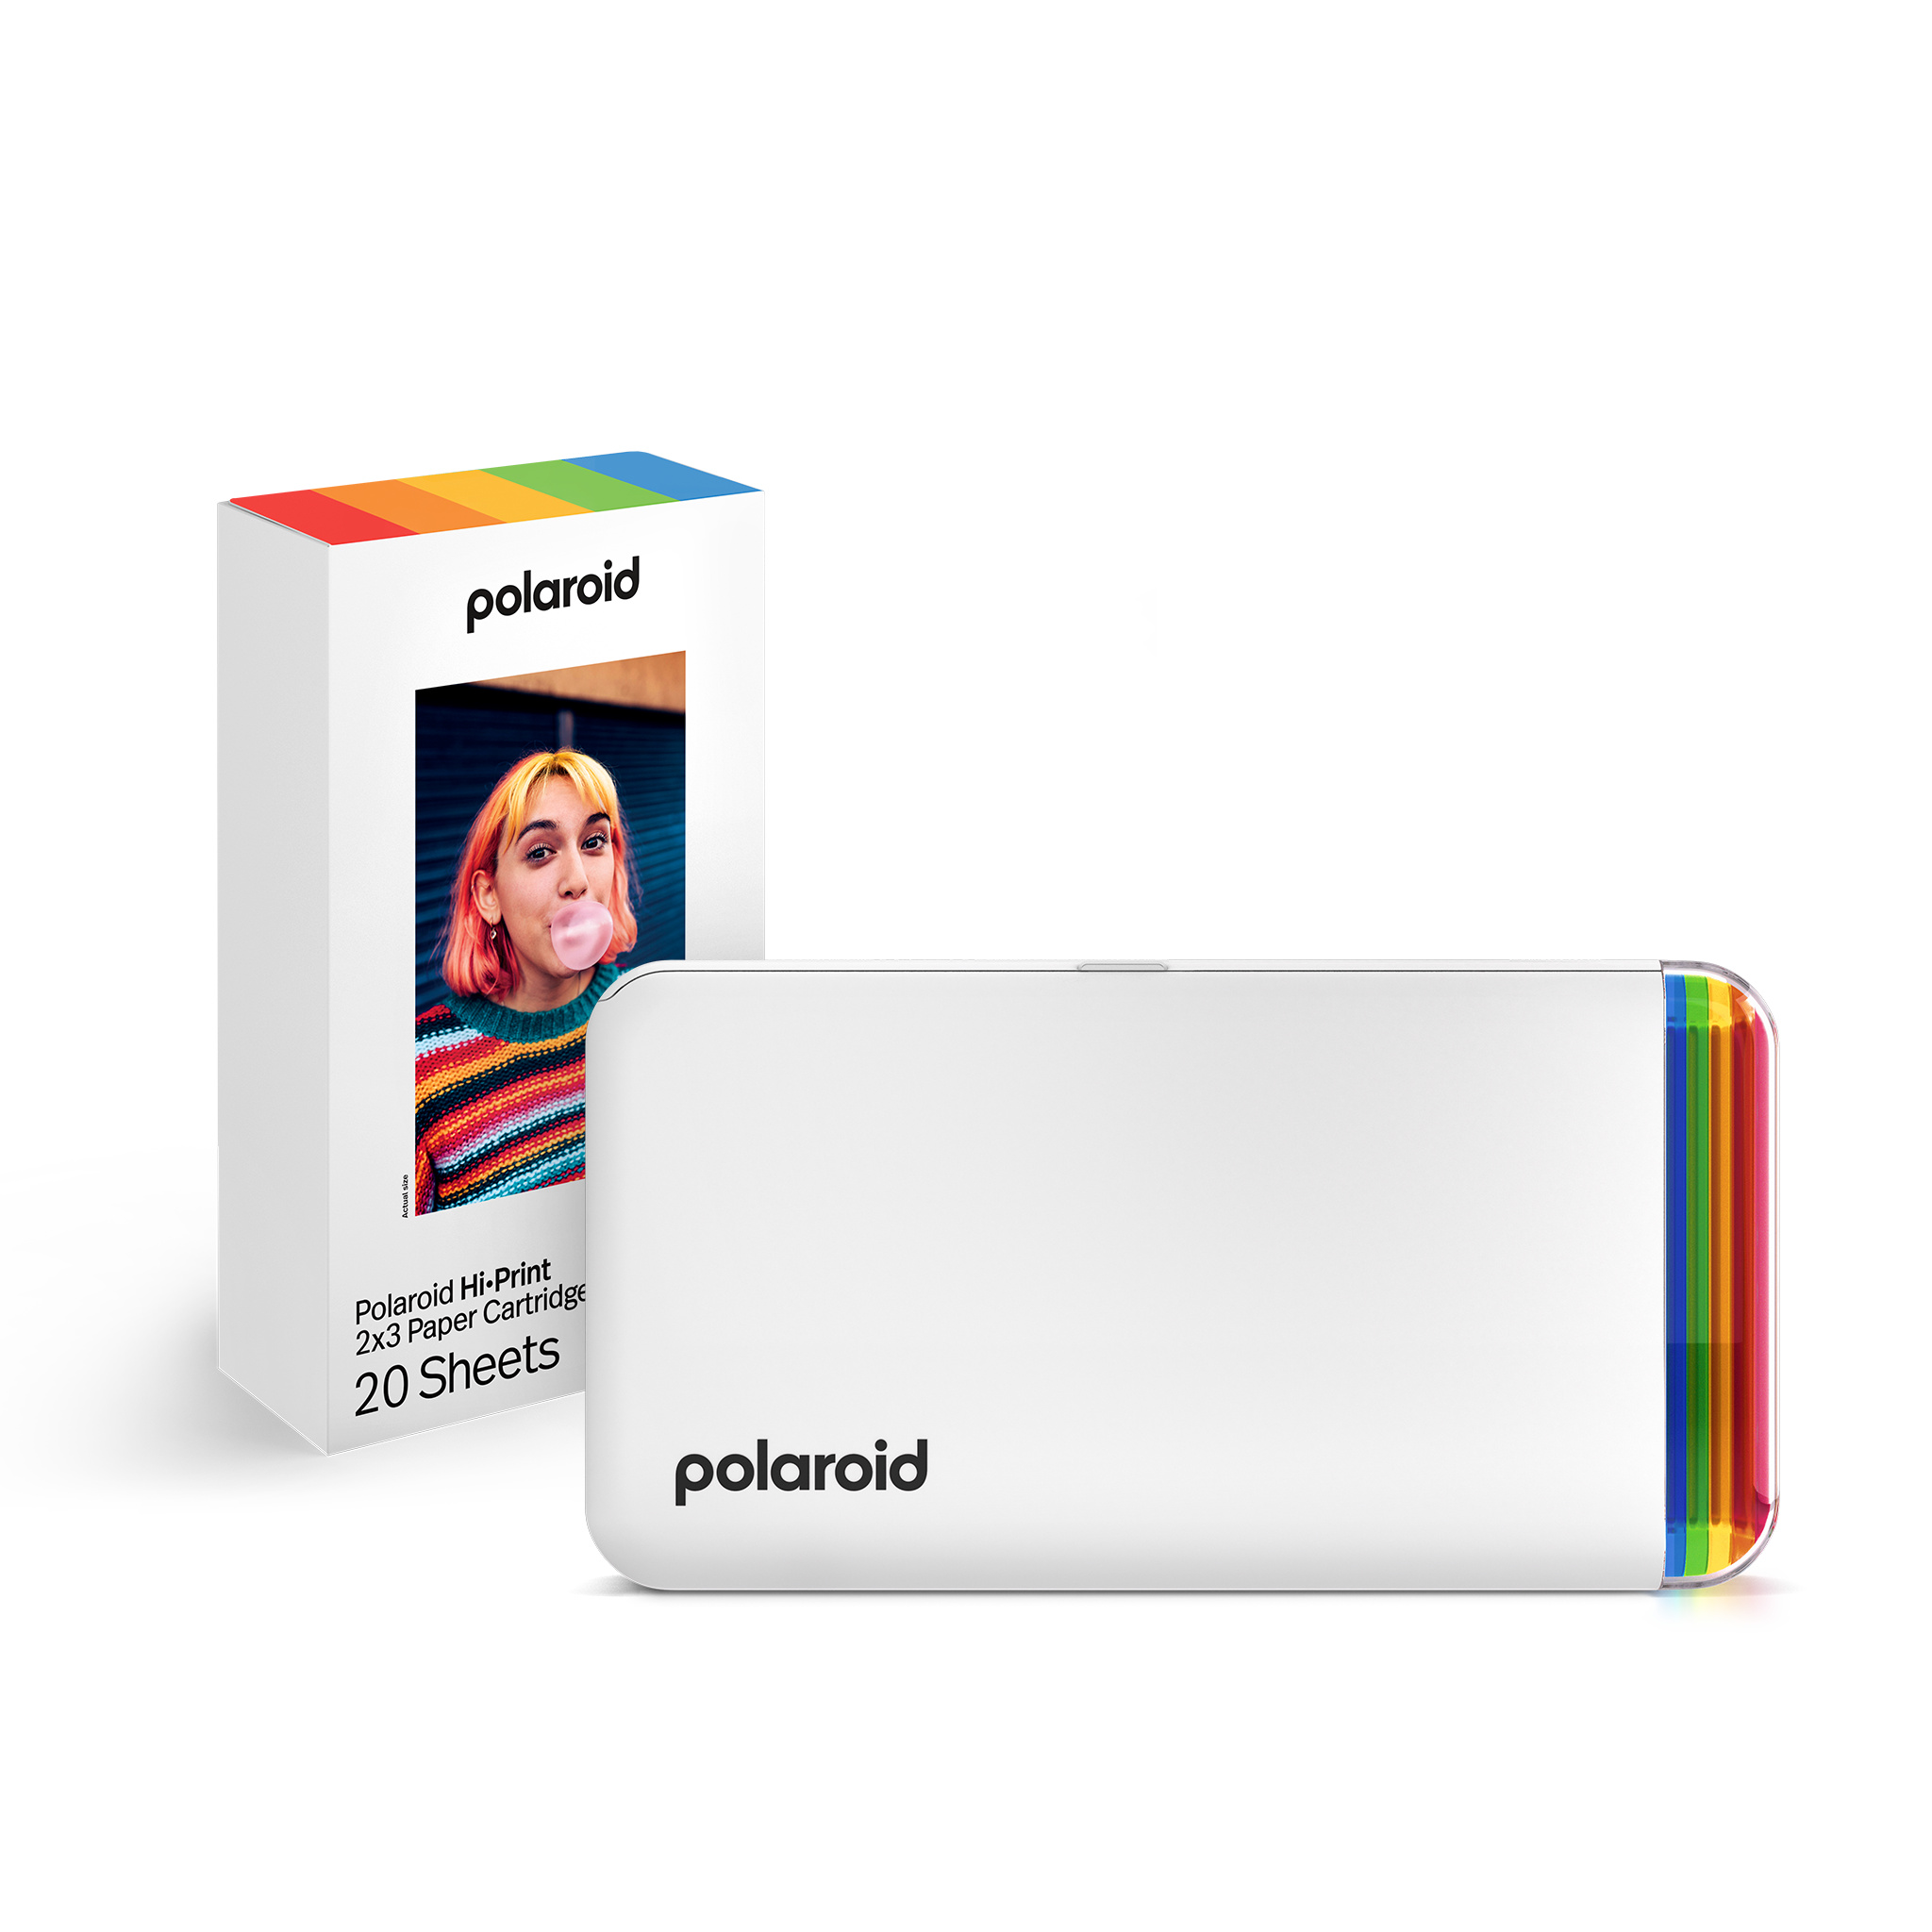 Migo - Polaroid Hi-Print - Impresora de bolsillo